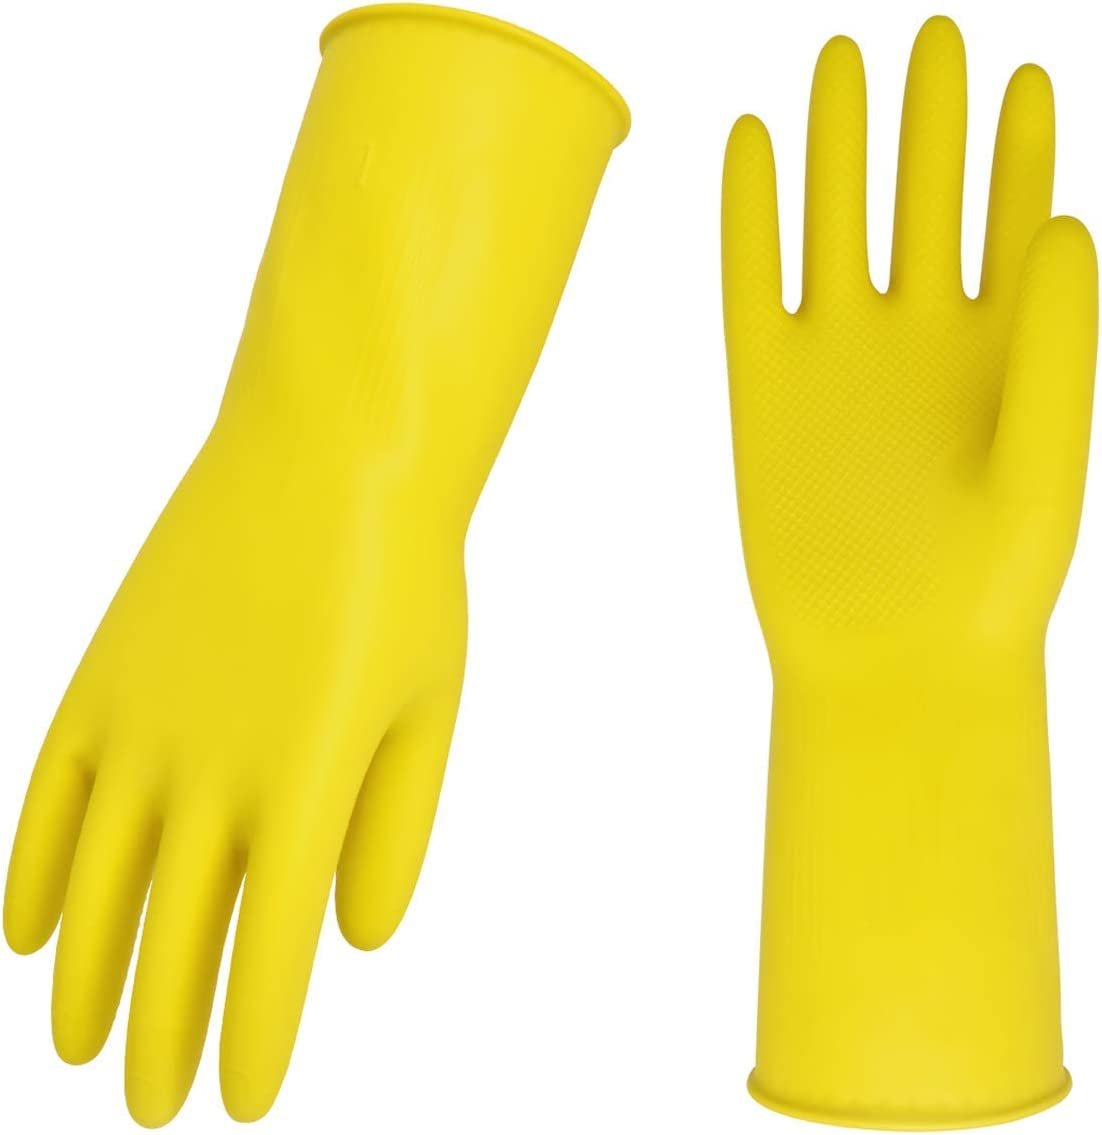 Reusable Household Gloves